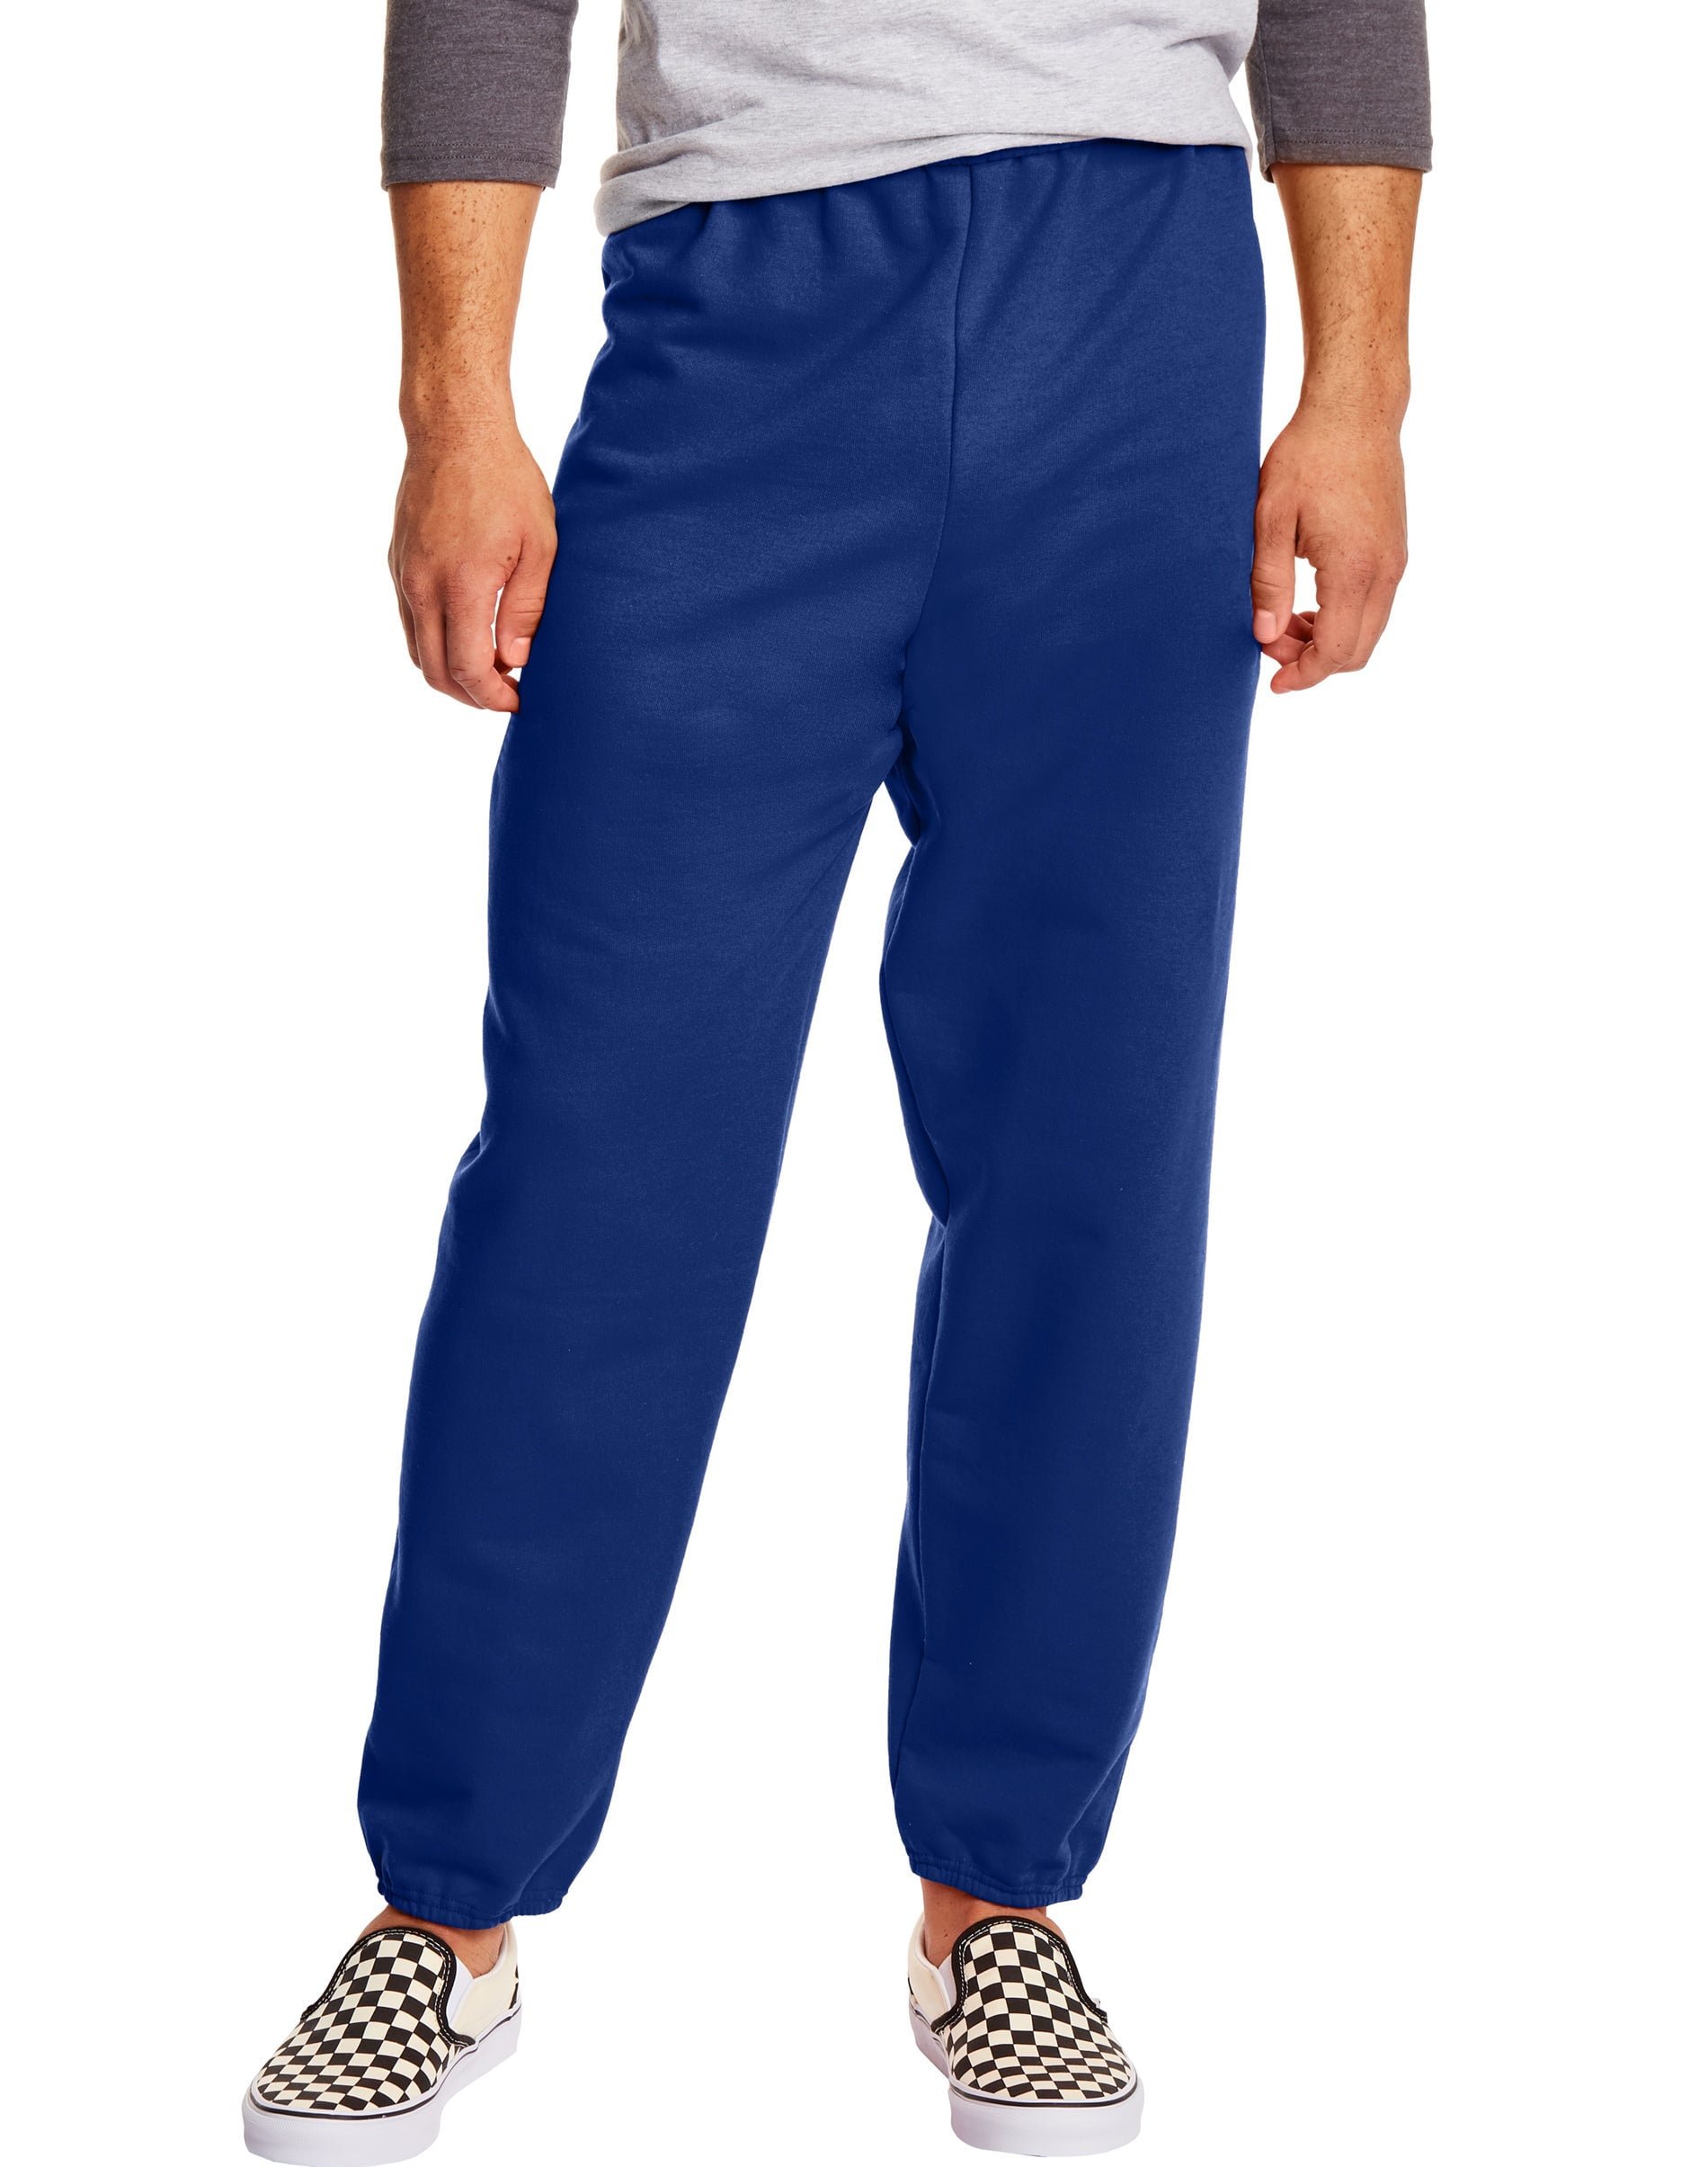 Hanes EcoSmart Men's Fleece Sweatpants, 2-Pack, 32 Charcoal